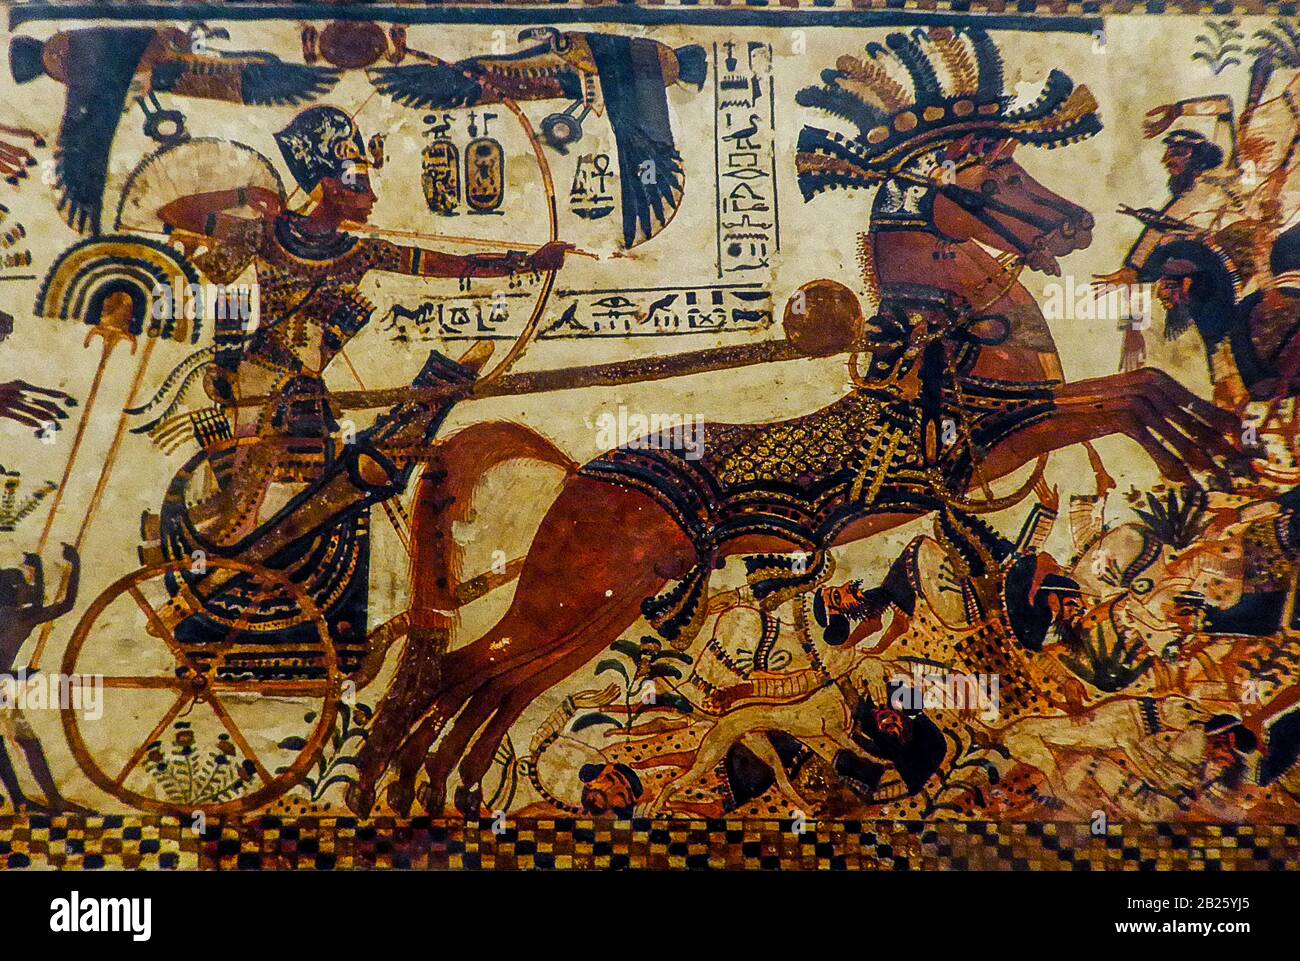 Egitto Cairo Museo Archeologico Tutankhamun - Guerra di Tutankhamun il petto dipinto di Chariot Tutankhamun presenta scene del re che combatte i nemici Egypts, sui lati lunghi è mostrato come un guerriero nel suo carro che attacca libici, ittiti e nubiani Foto Stock